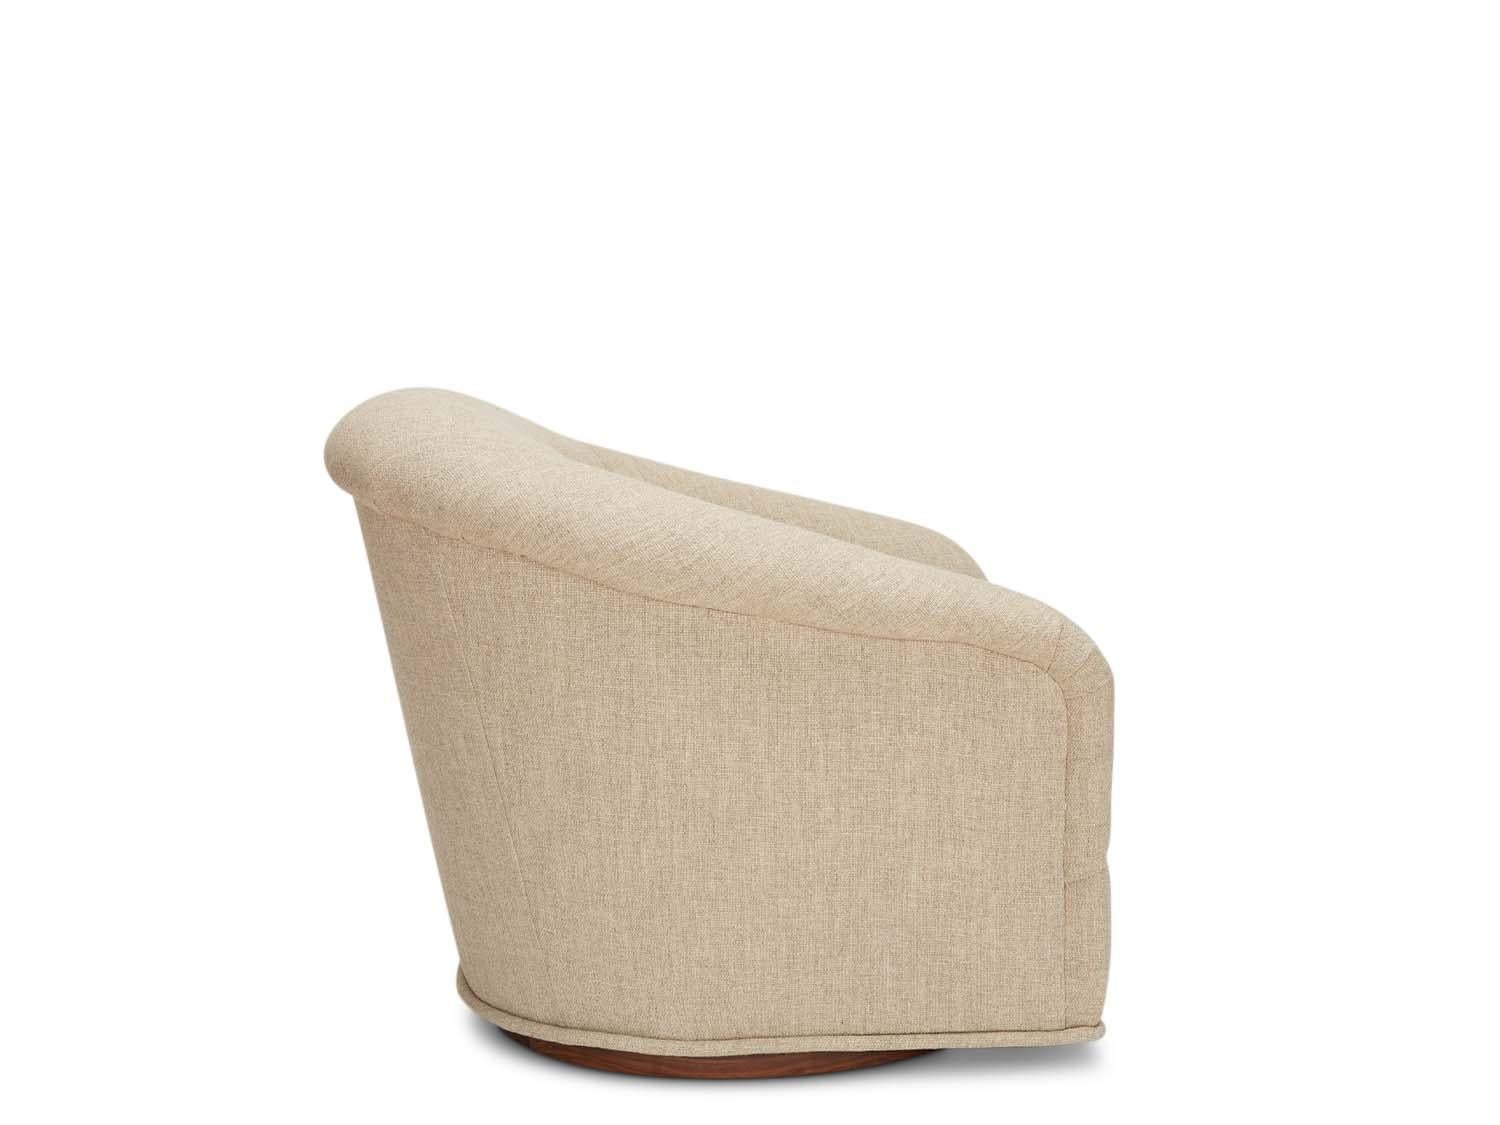 Le fauteuil pivotant Huxley s'inspire des meubles de salon des années 1970. Une forme galbée avec une touffe à une ligne et un long coussin d'assise reposent sur une base en laiton qui pivote.

La collection Lawson-Fenning est conçue et fabriquée à